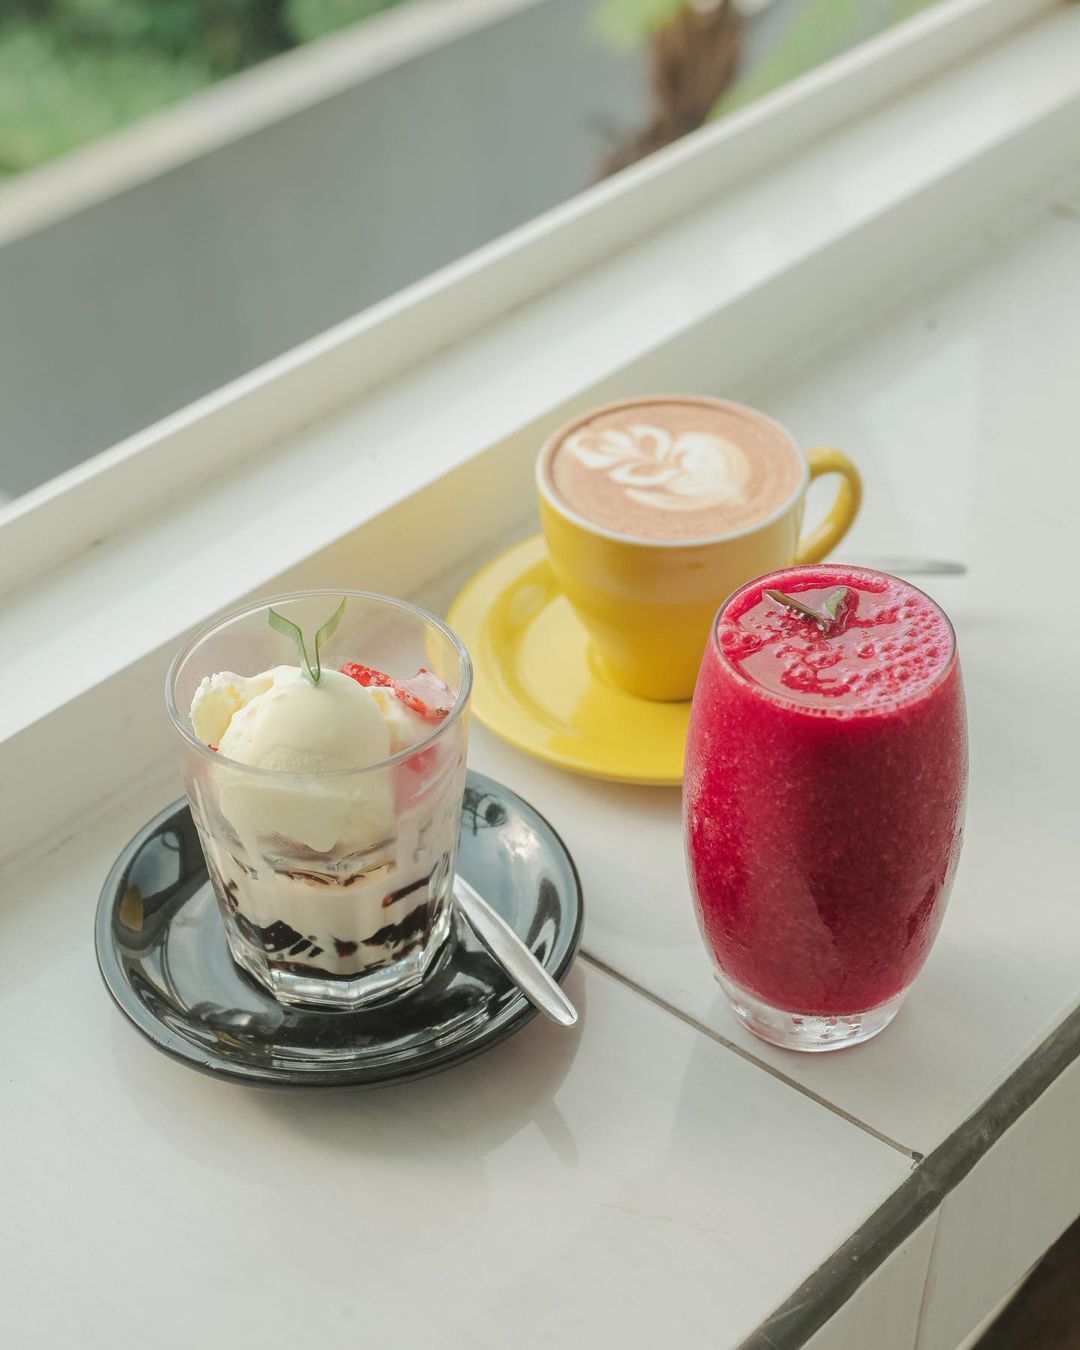 Aneka minuman hangat dan dingin bisa dipesan / IG @banyumili.restoandcafe